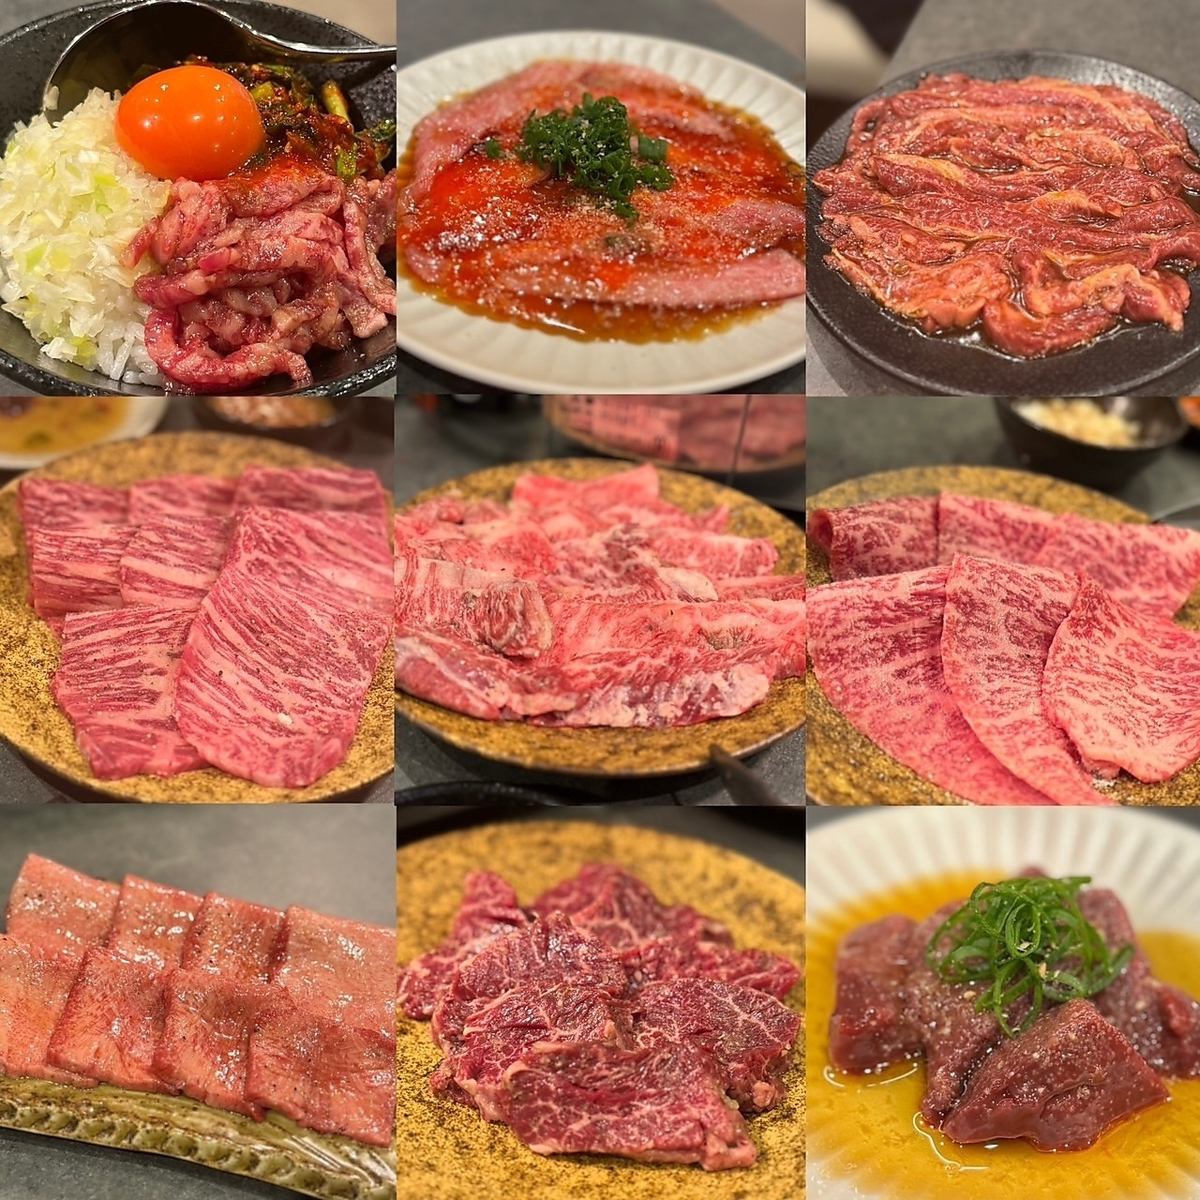 從福島站步行5分鐘★使用嚴選日本牛肉的烤肉店。概念是“感覺特別和充實”